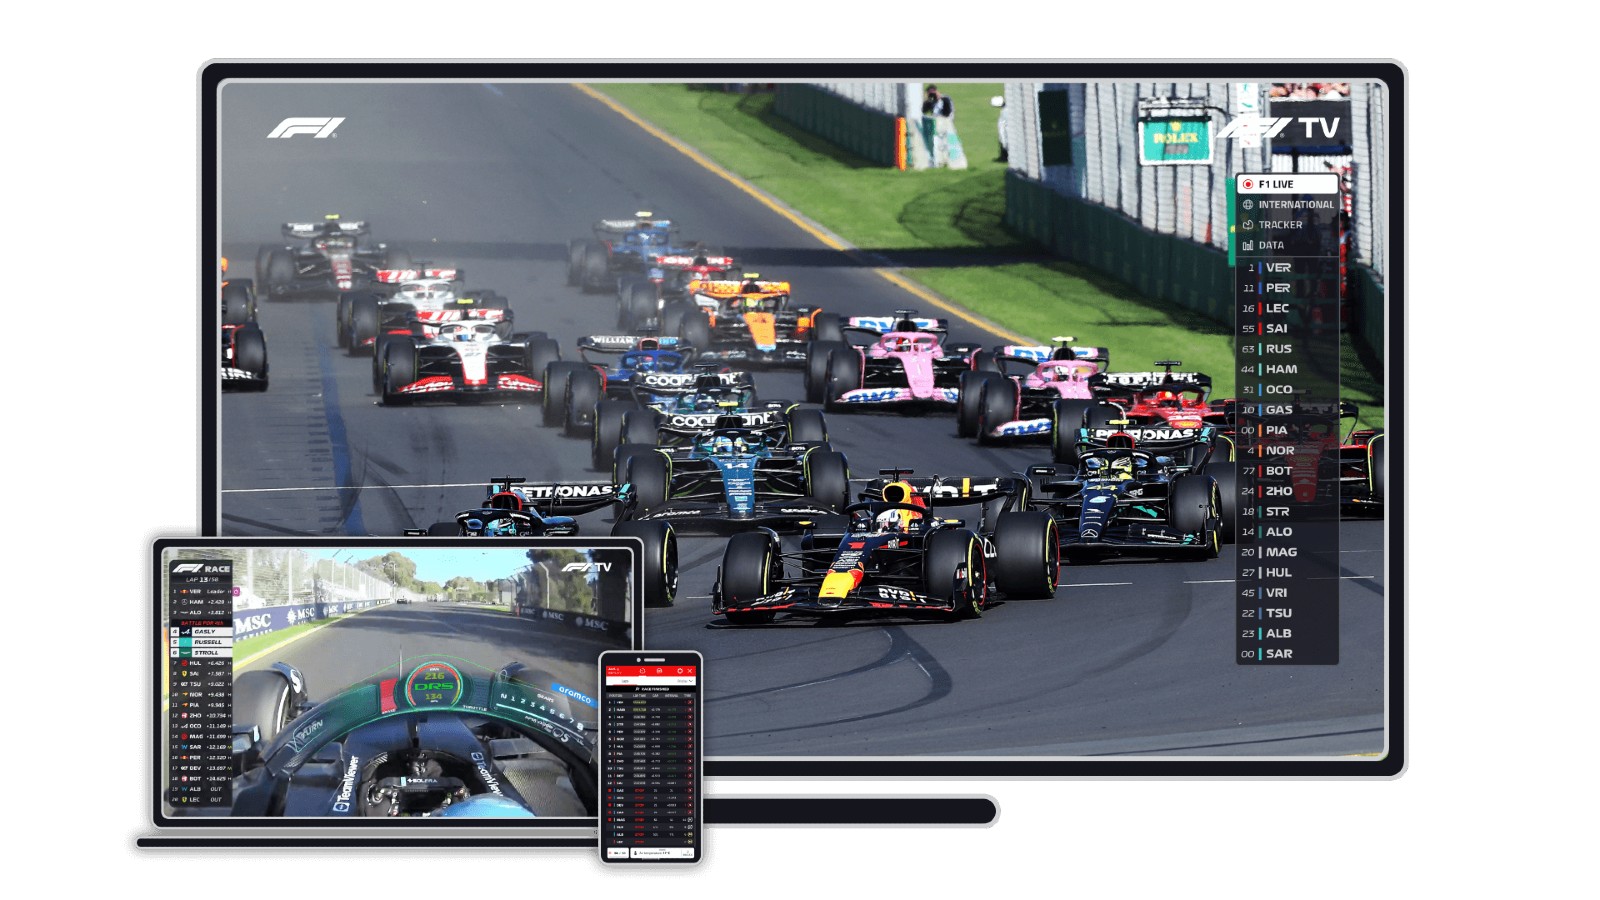 Appareils F1 TV Pro disponibles pour regarder toute l'action de la F1